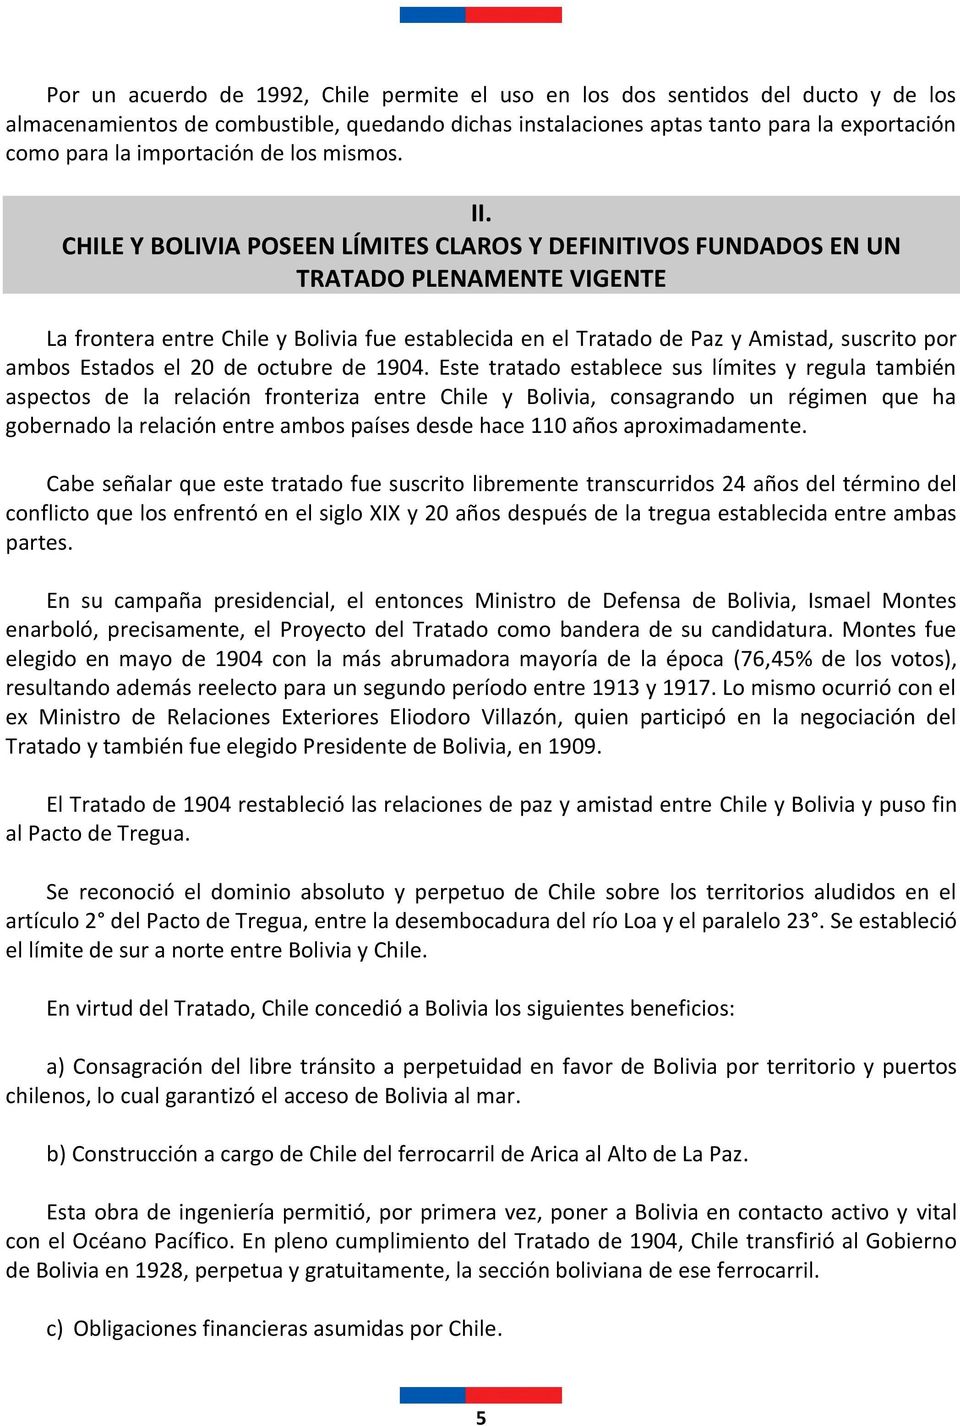 CHILE Y BOLIVIA POSEEN LÍMITES CLAROS Y DEFINITIVOS FUNDADOS EN UN TRATADO PLENAMENTE VIGENTE La frontera entre Chile y Bolivia fue establecida en el Tratado de Paz y Amistad, suscrito por ambos